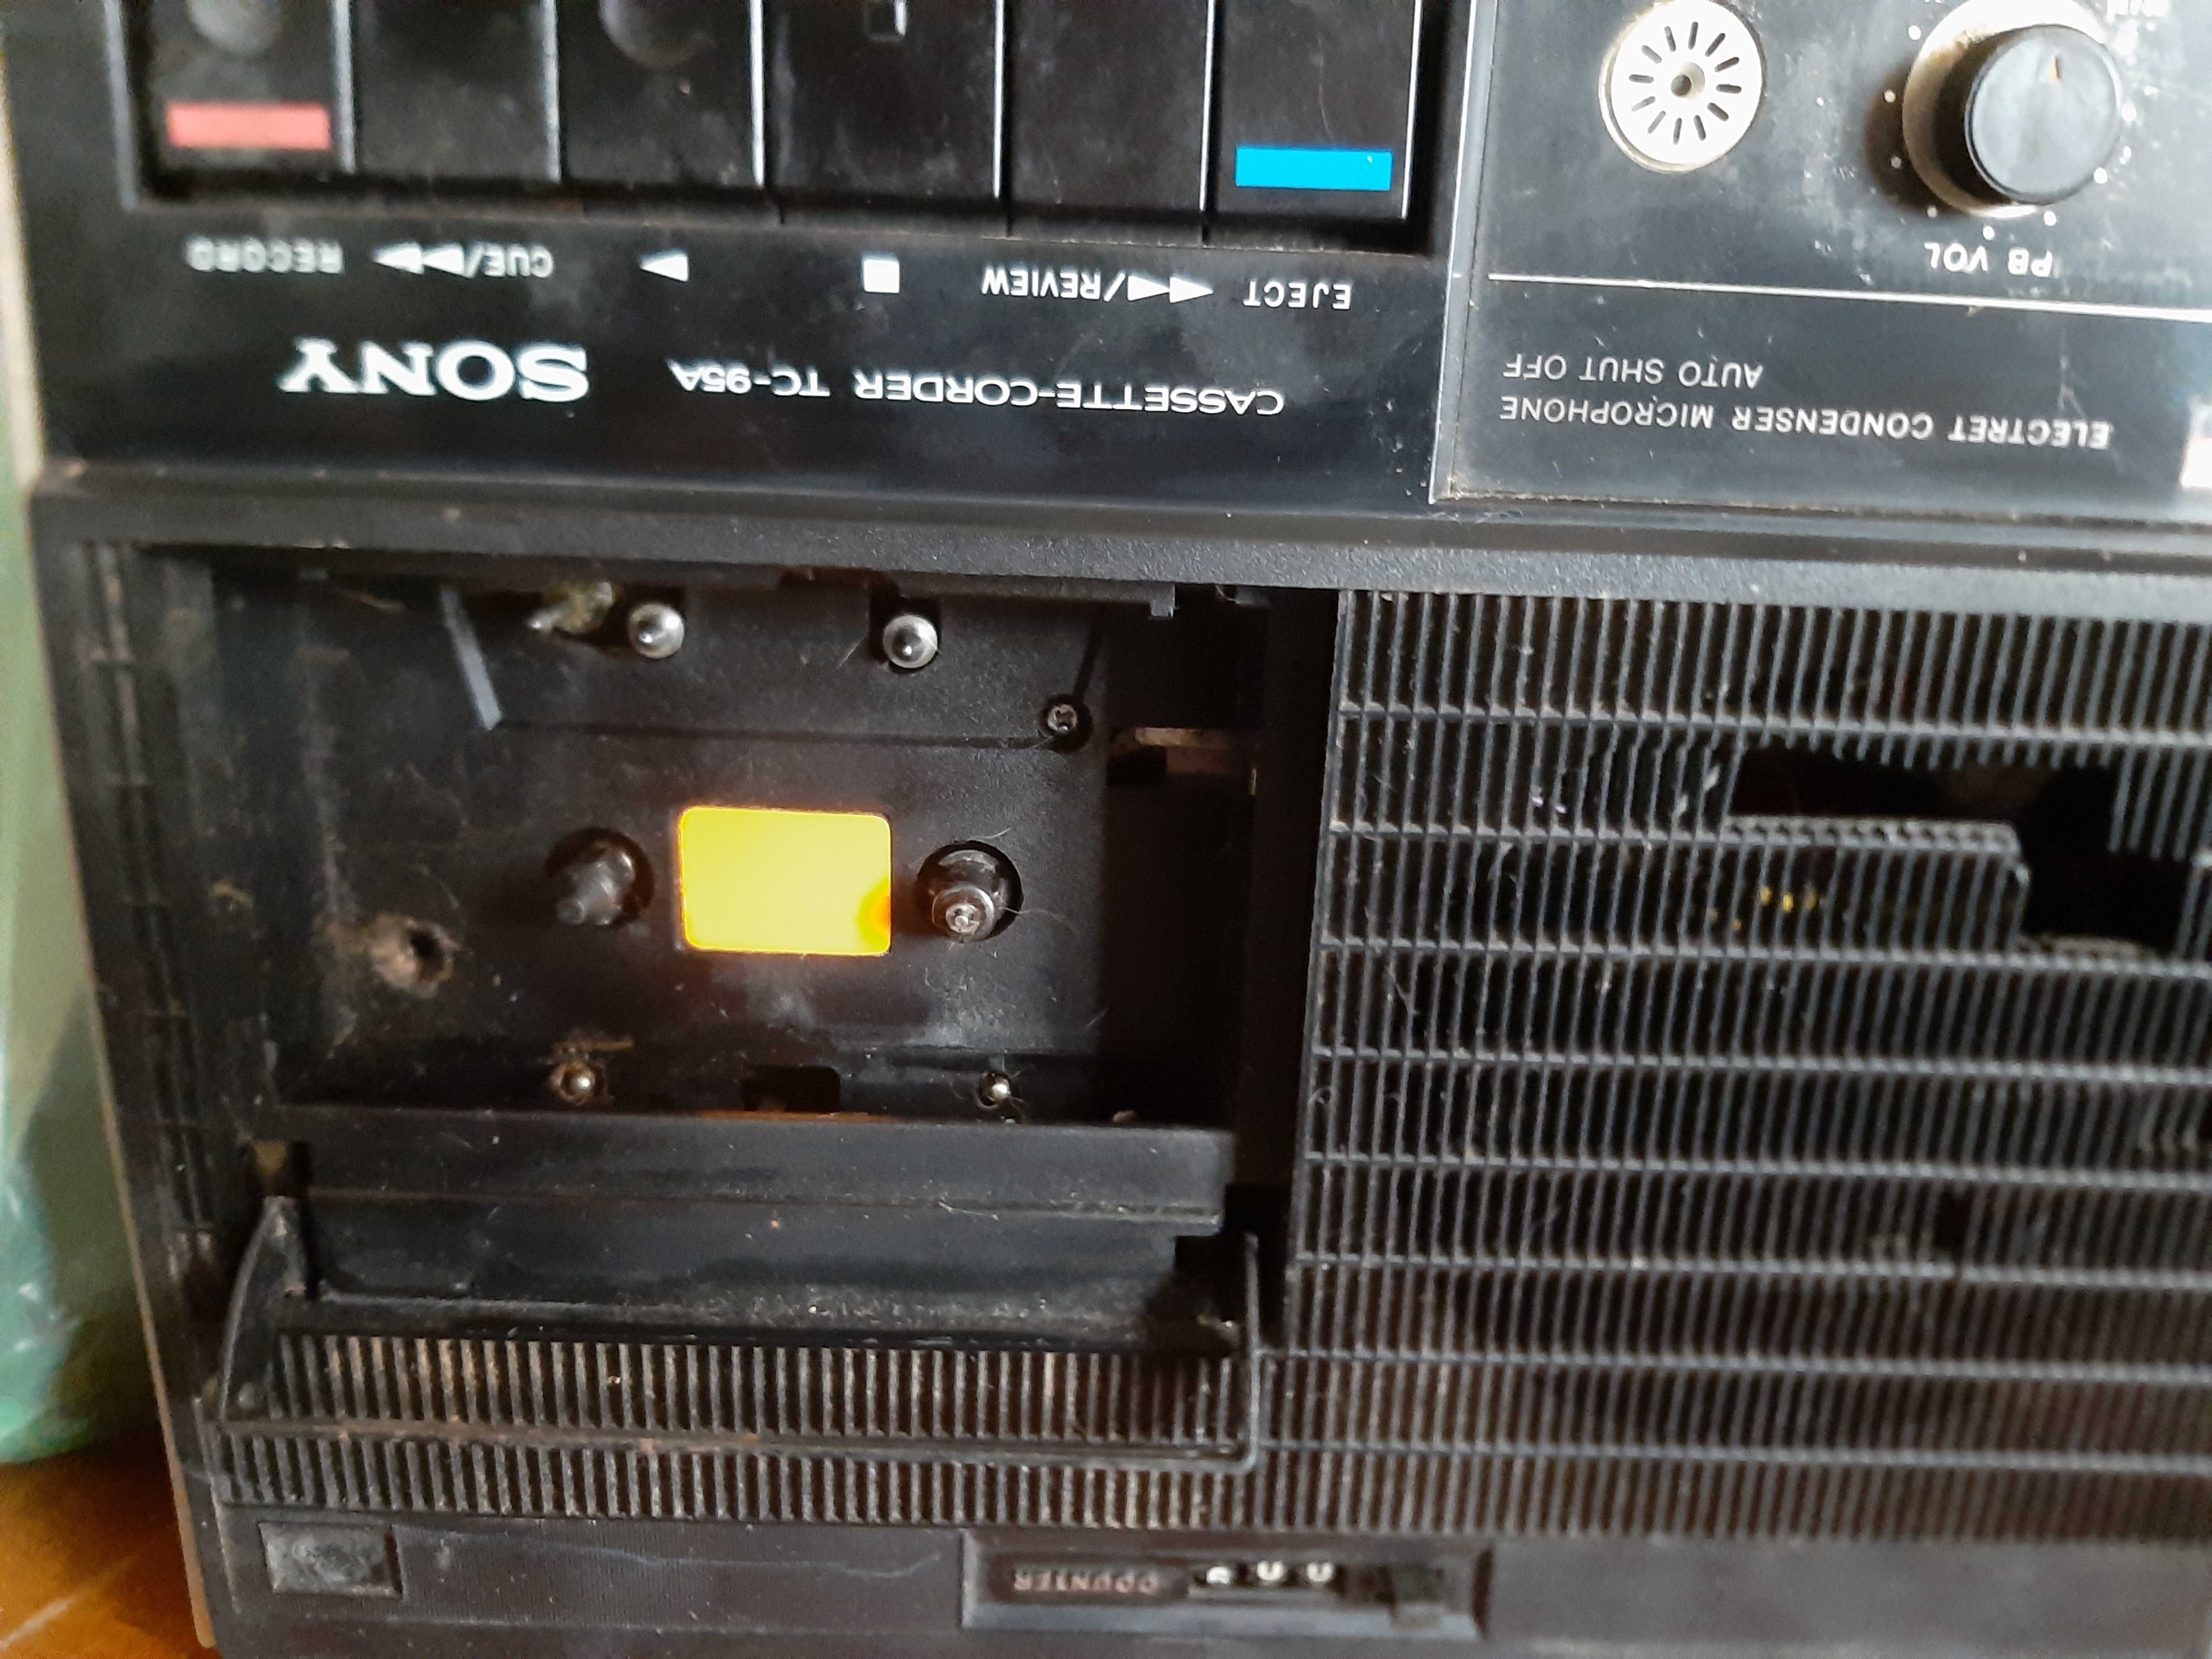 Radiouri vechi, radiocasetofoane, antene